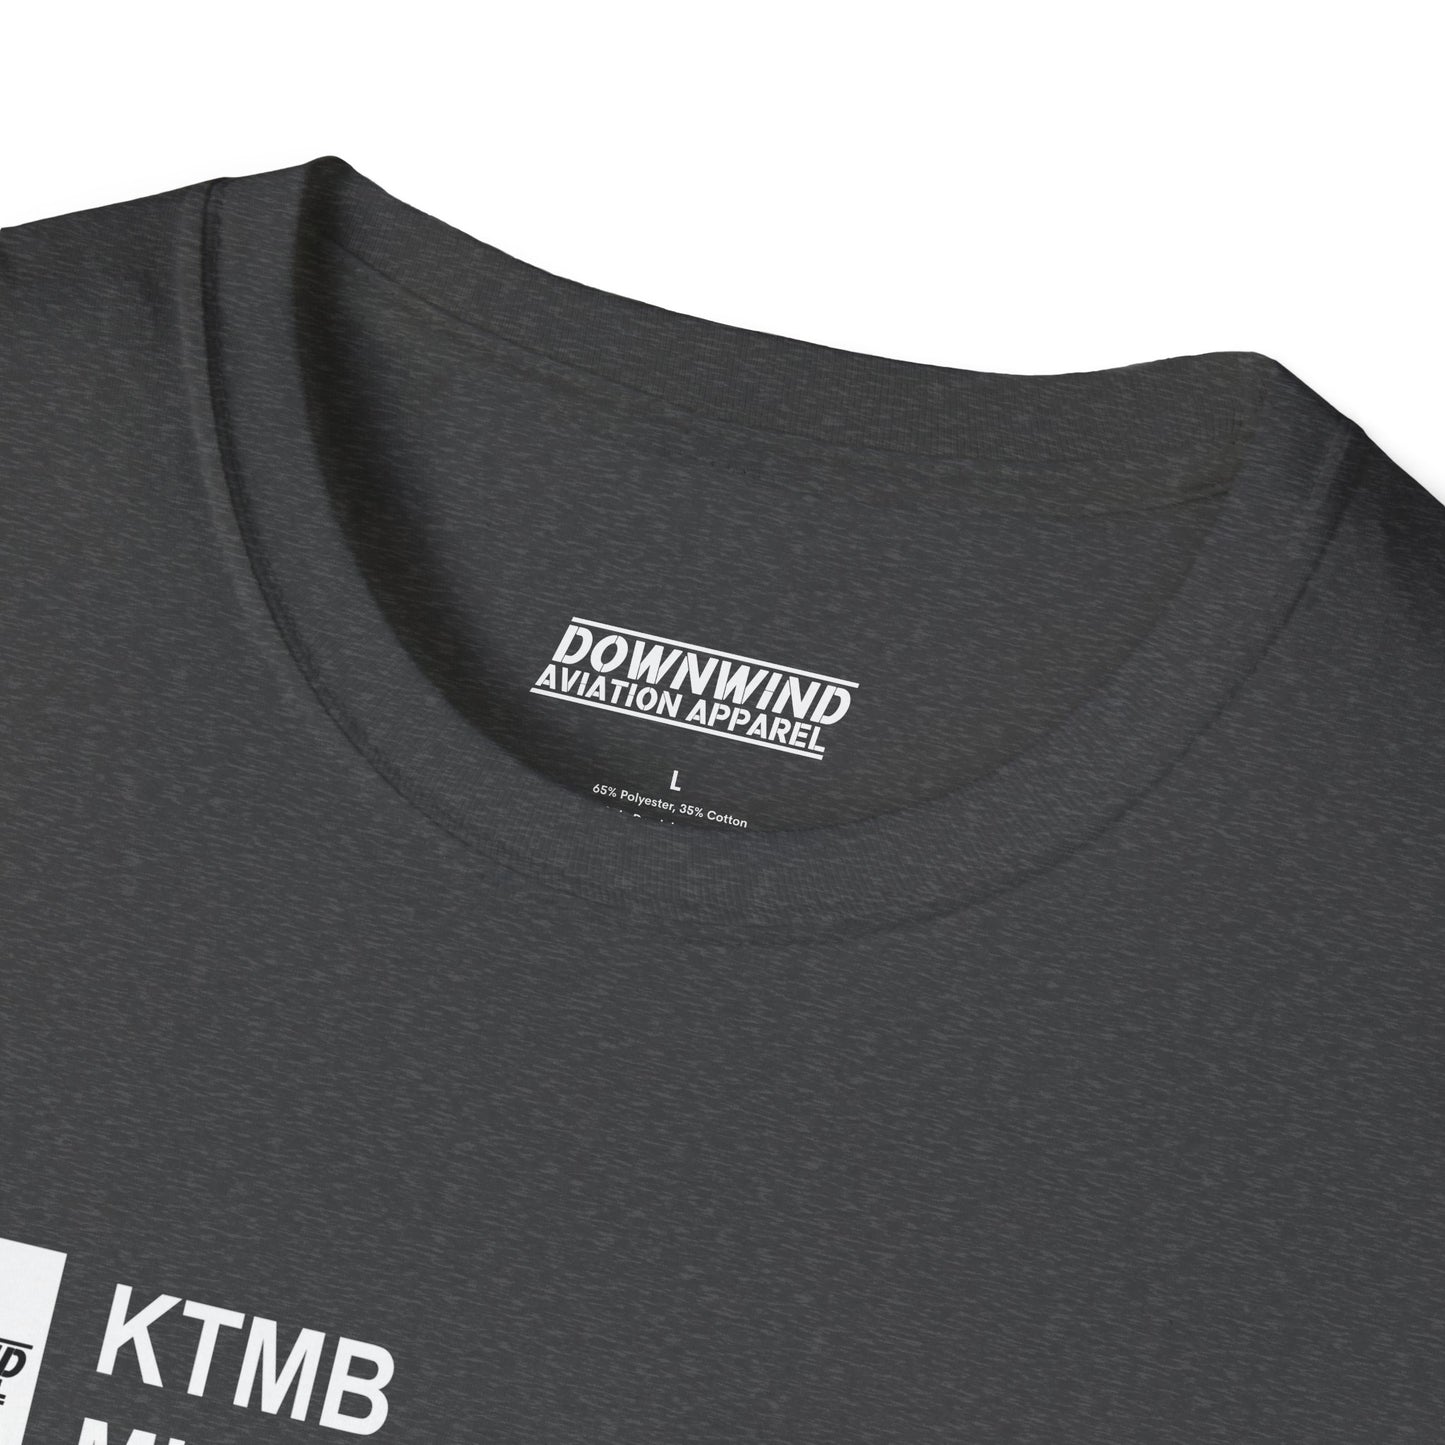 KTMB / Miami Exec. Airport T-Shirt